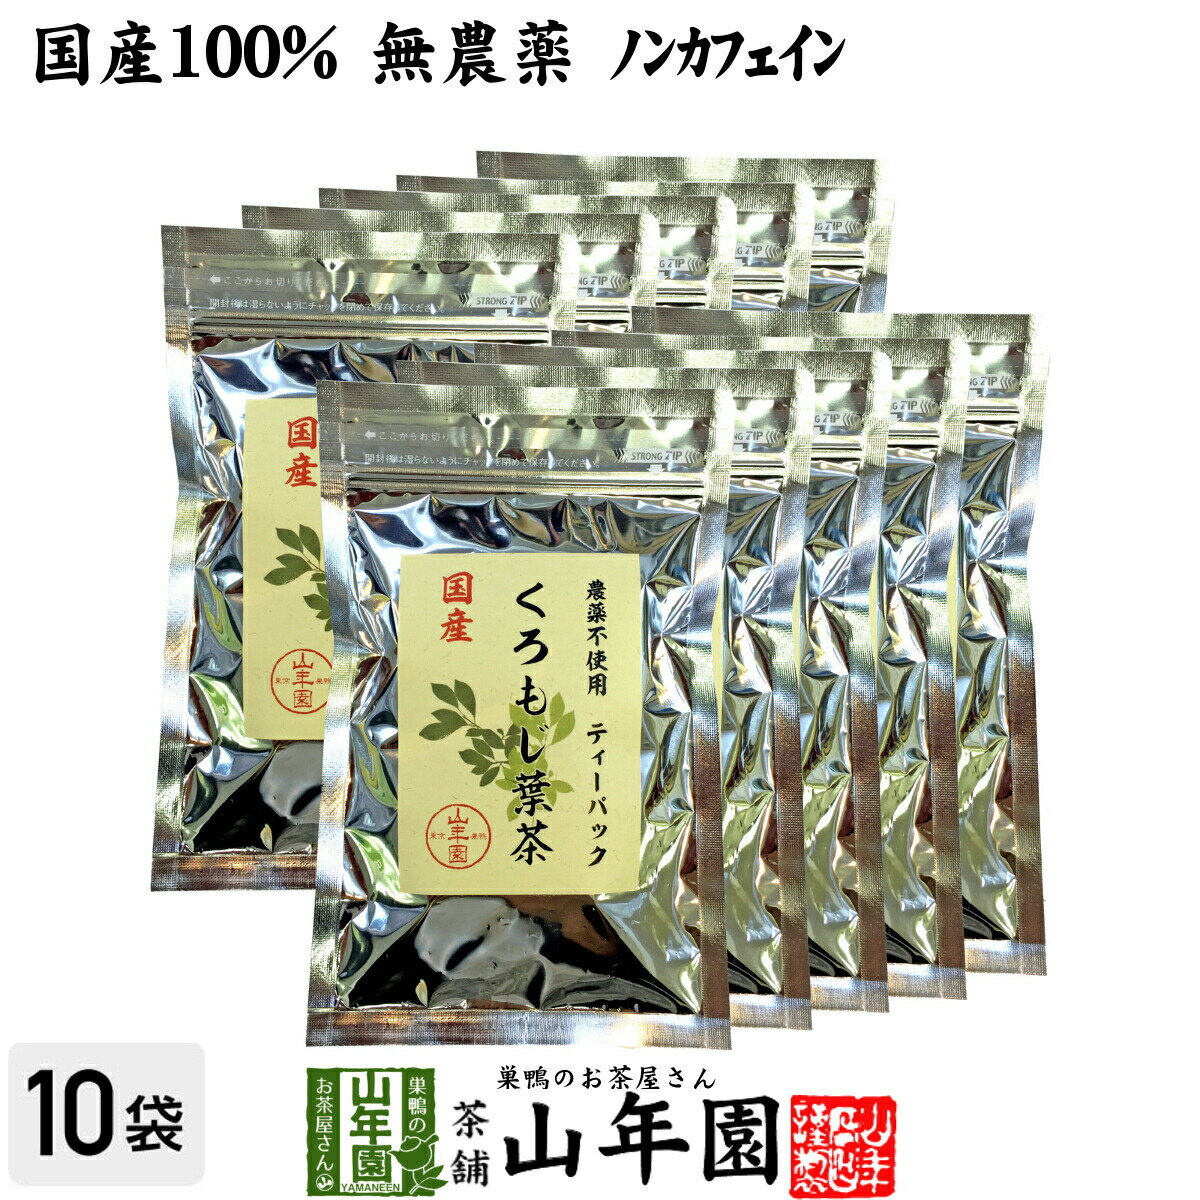 【国産 100%】クロモジ茶(葉) 2g×10パック×10袋